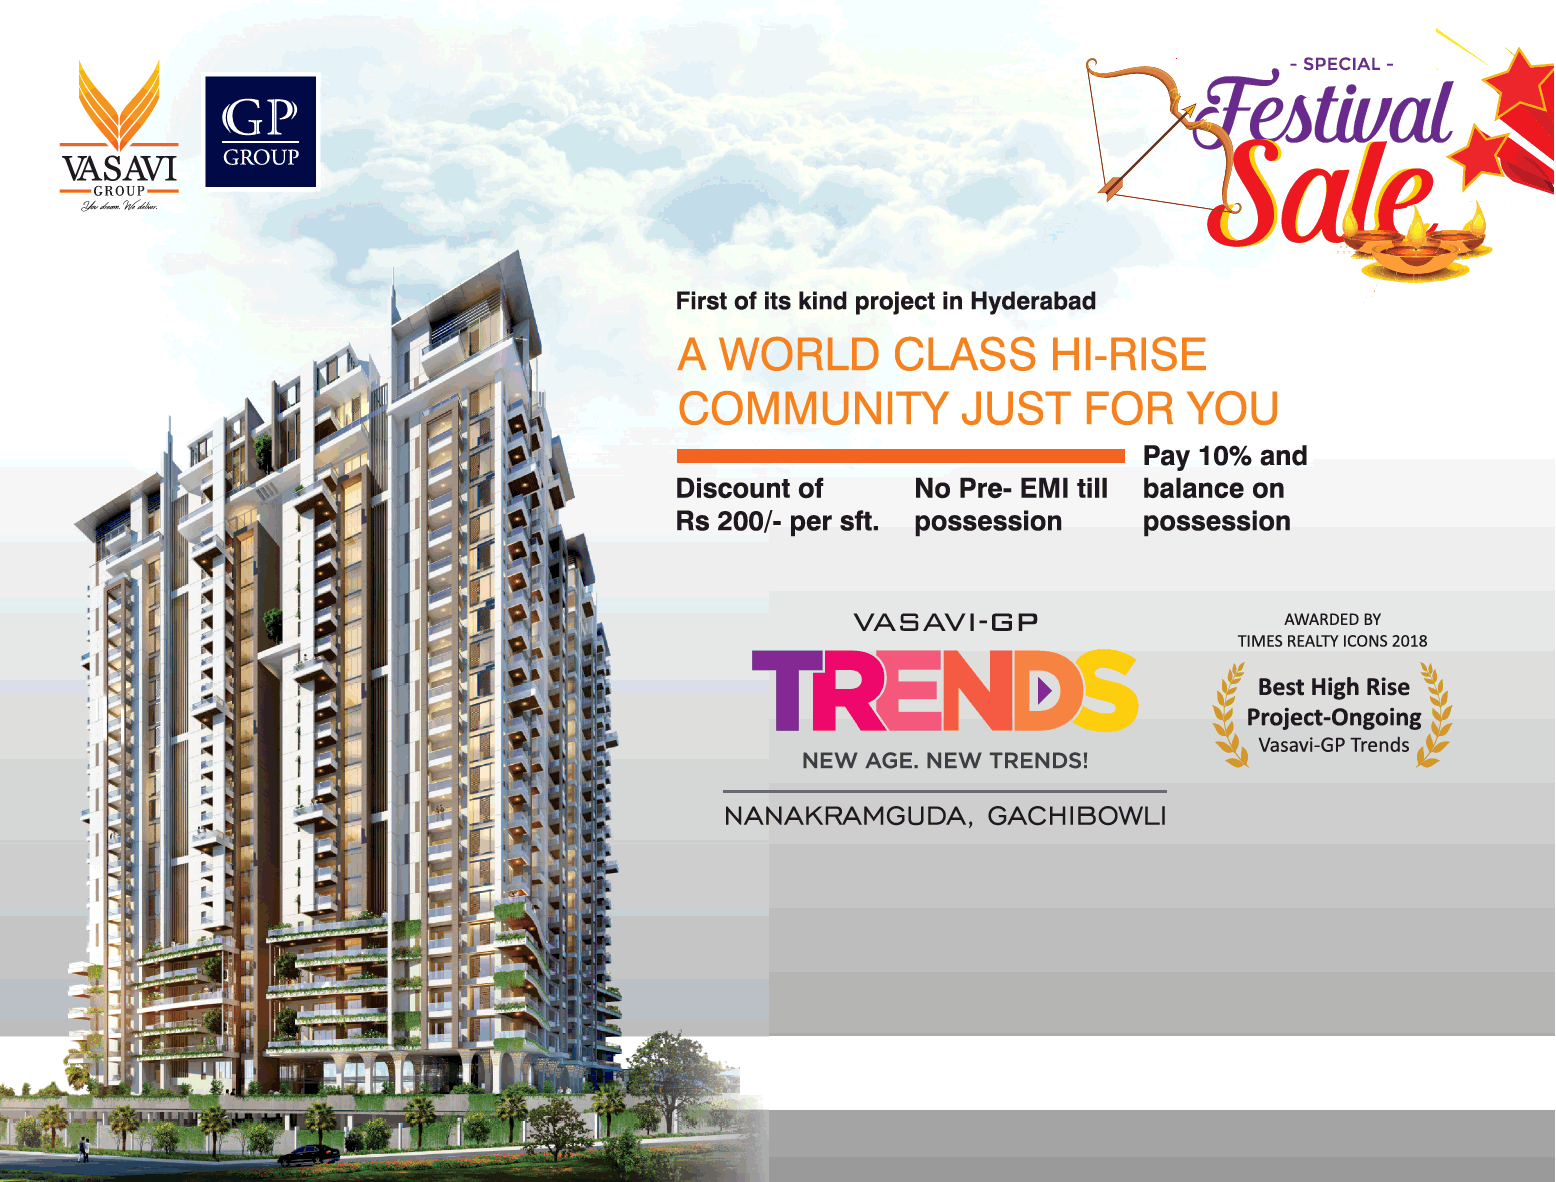 Book a world class hi-rise community in Vasavi GP Trends at Hyderabad Update